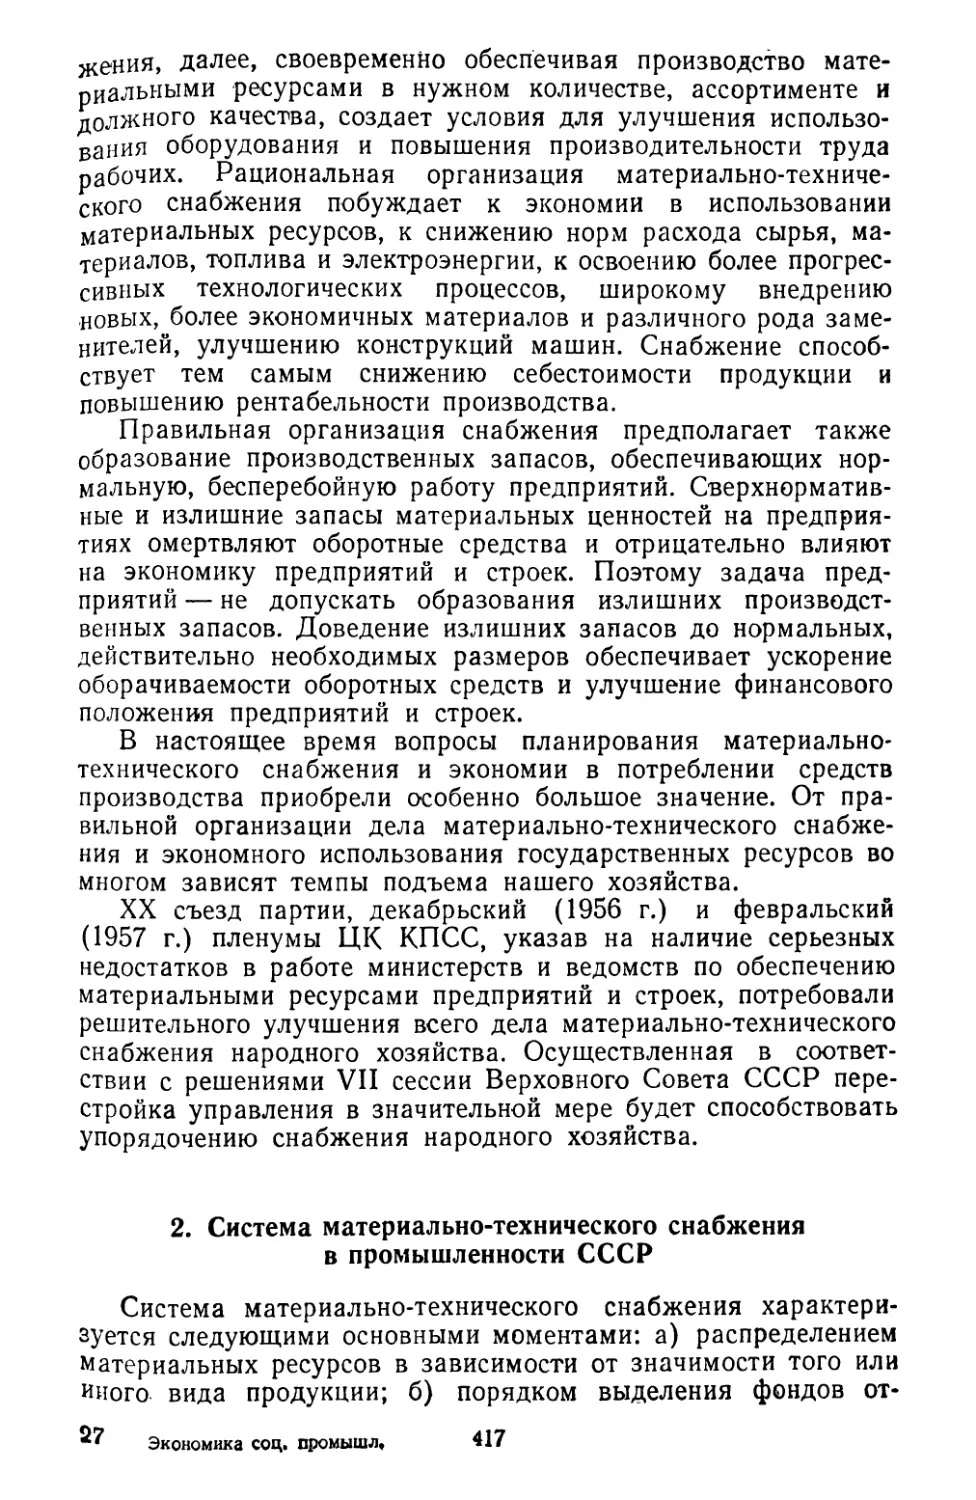 2. Система материально-технического снабжения в промышленности СССР